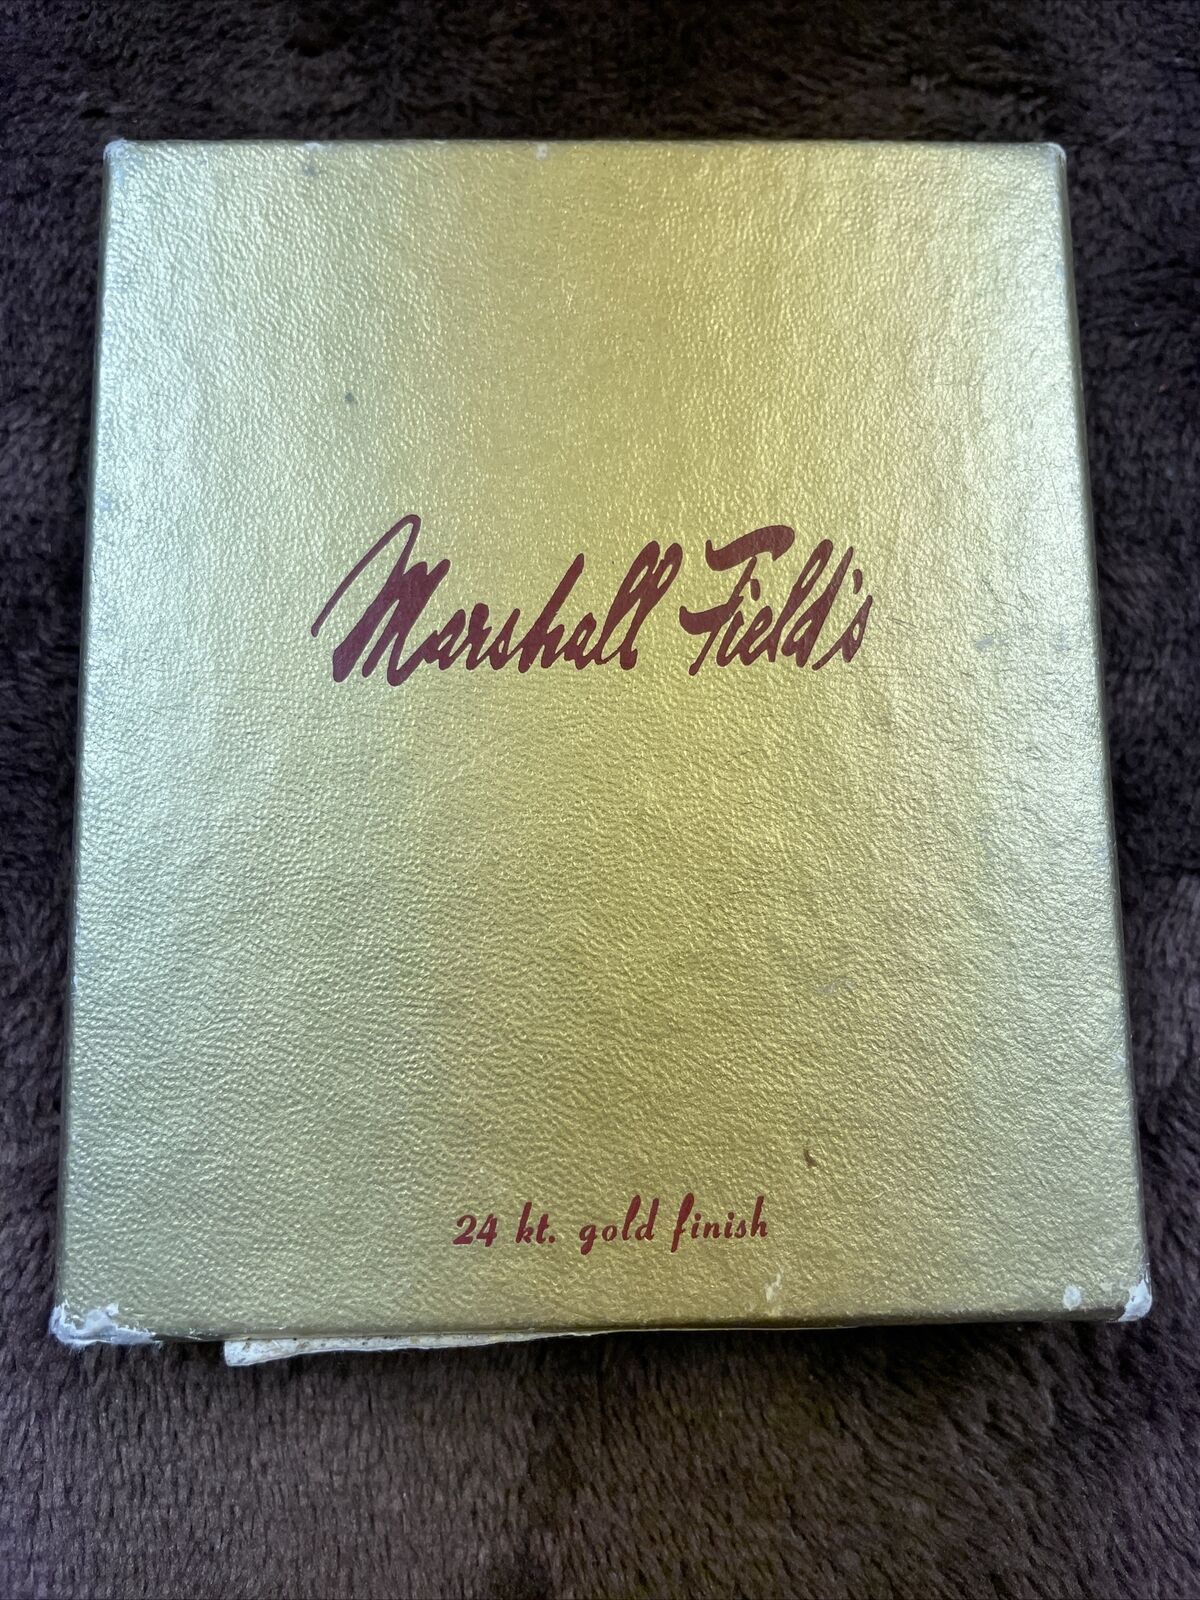 Vintage Rare Marshall Field’s 24K Gold Finish Shedd Oceanarium Xmas Ornament